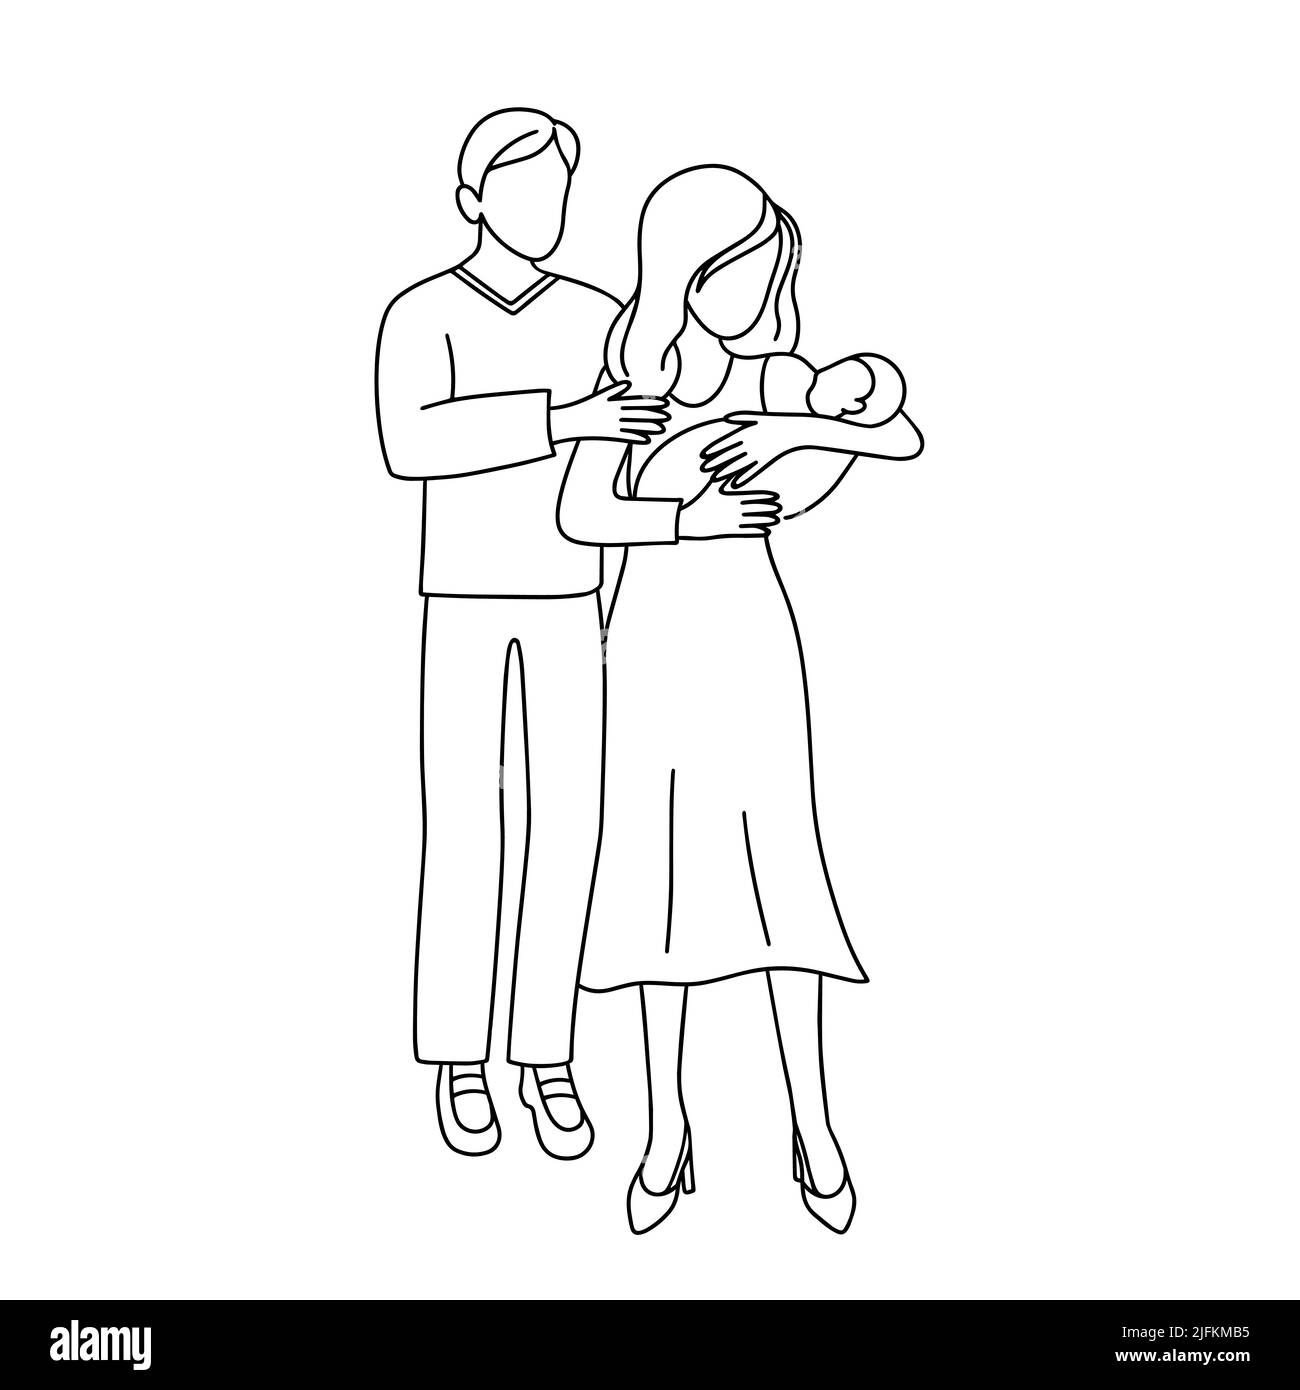 Illustrazione vettoriale del doodle della famiglia. La donna tiene il neonato tra le braccia, l'uomo si trova nelle vicinanze. Marito moglie e bambino delineano nero isolato oggetto su bianco ba Illustrazione Vettoriale